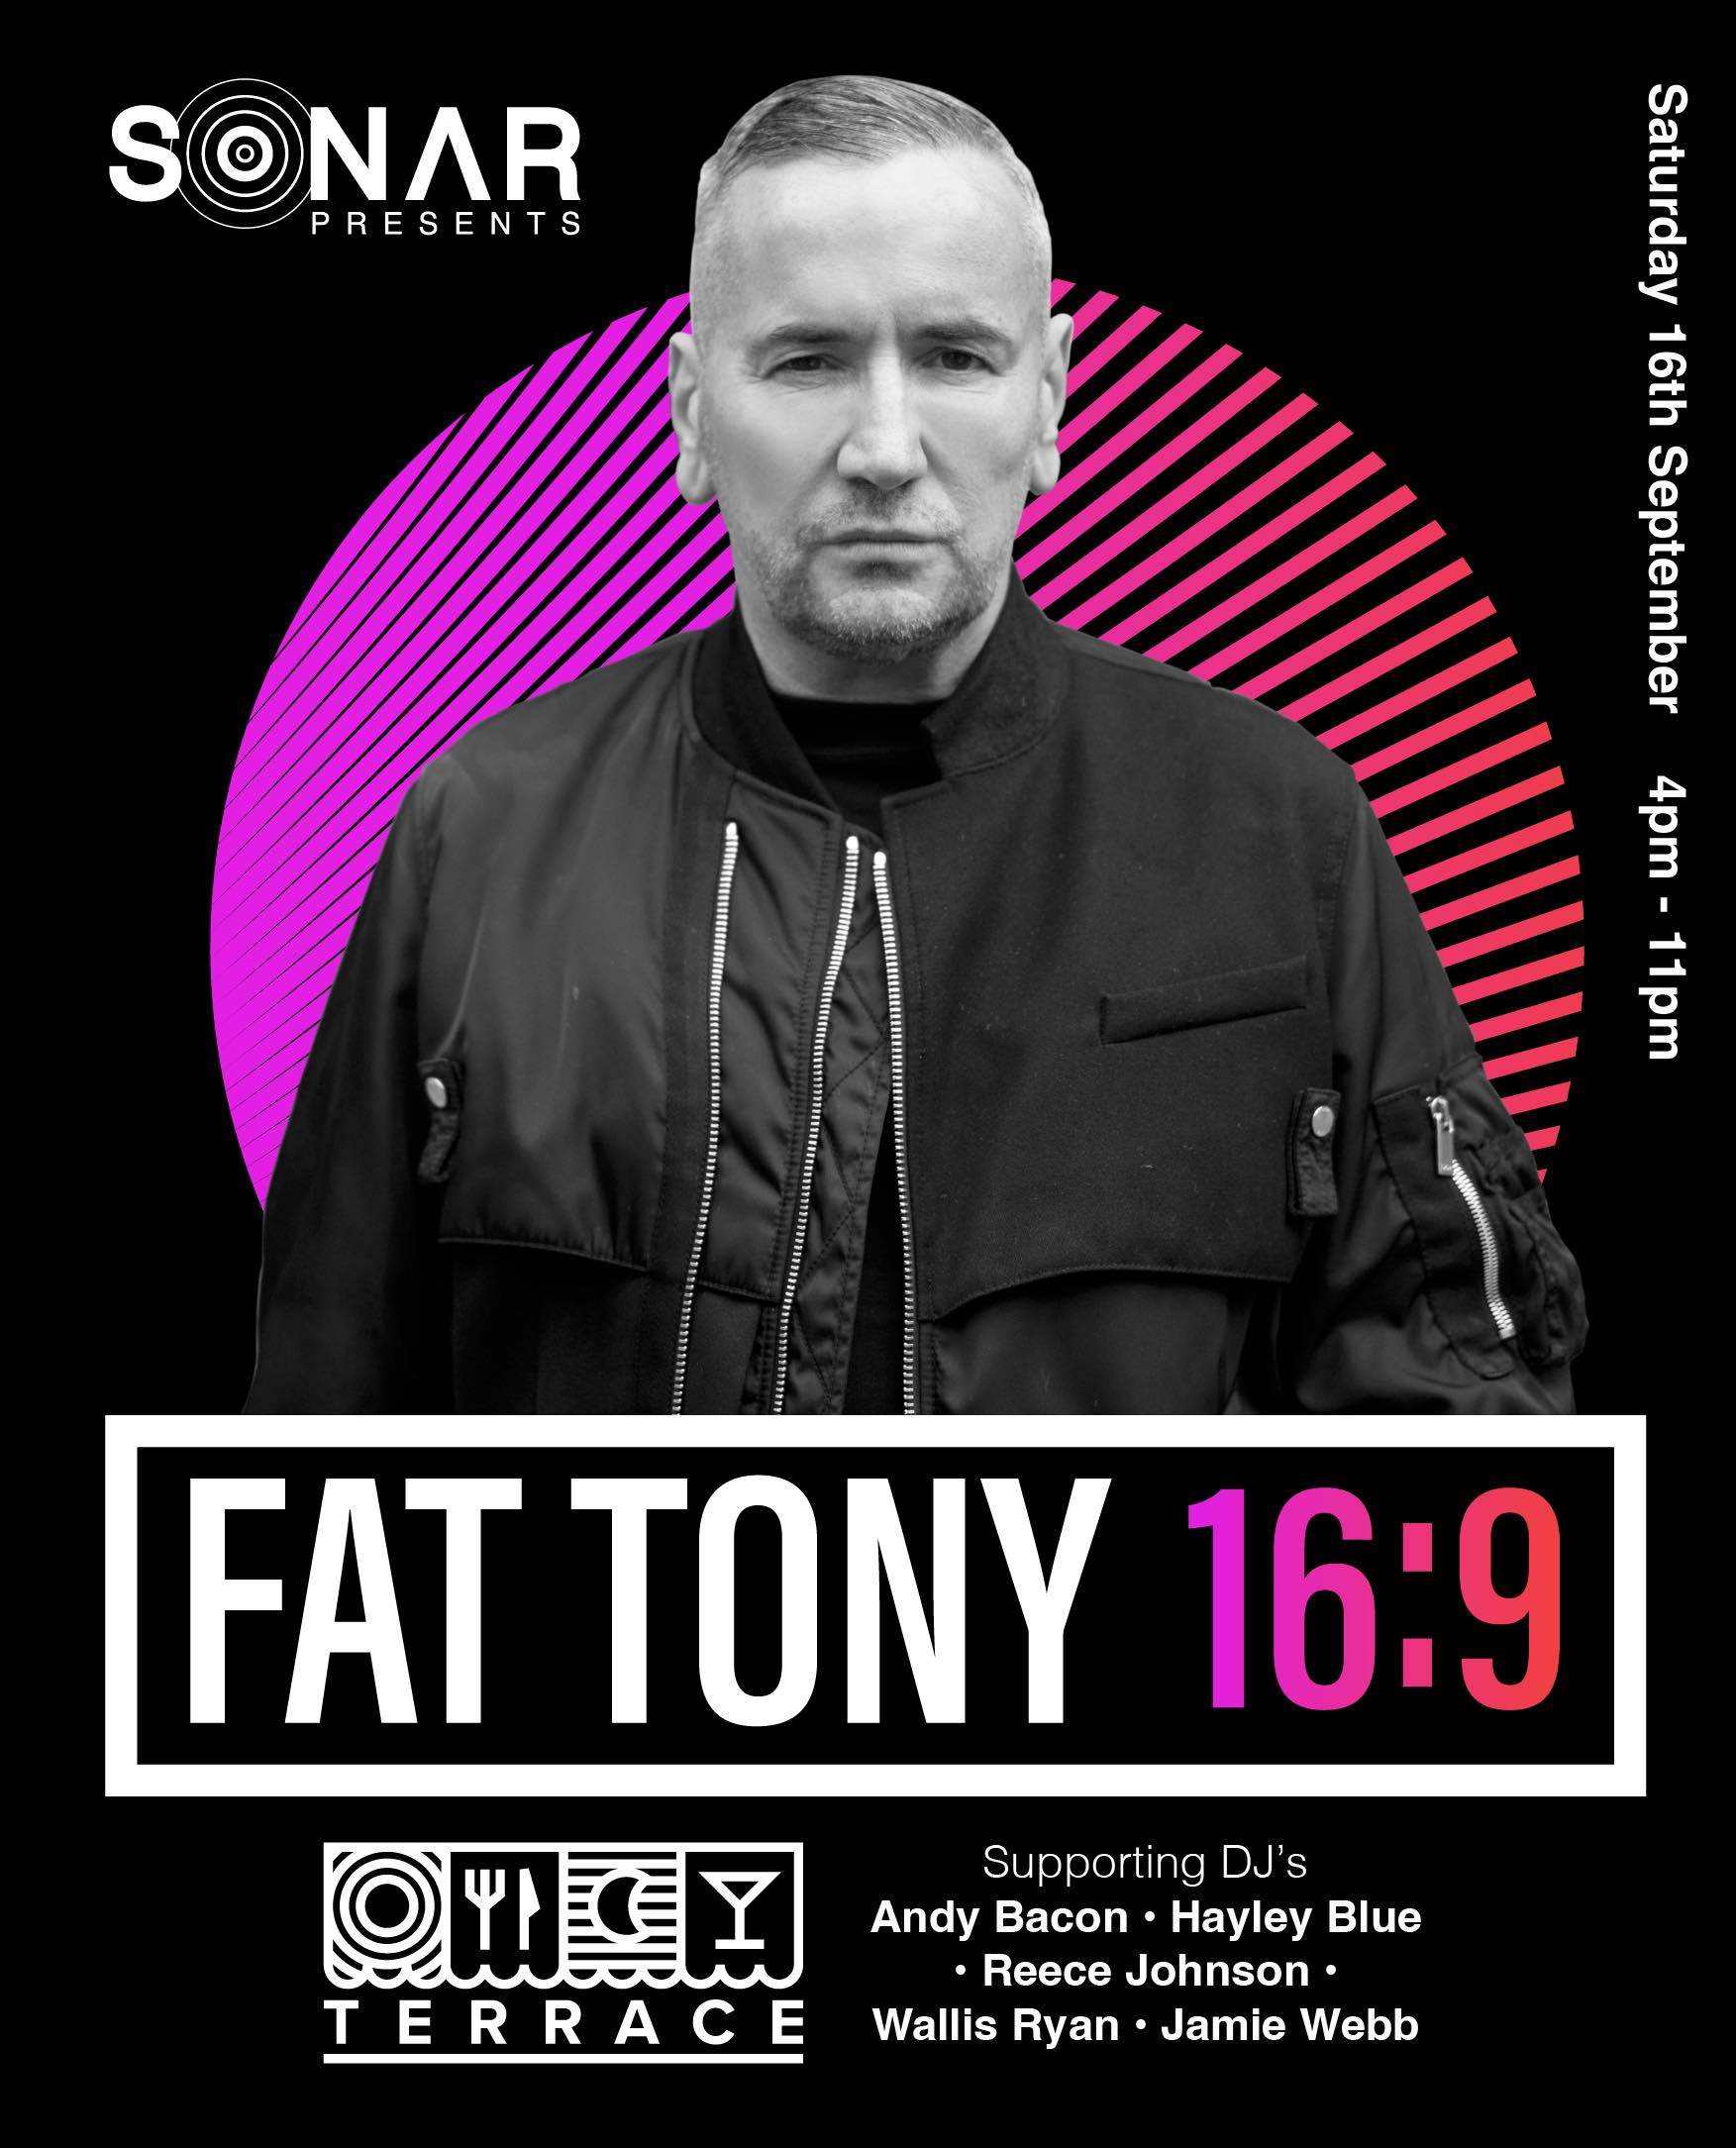 Sonar presents: Fat Tony - Página frontal